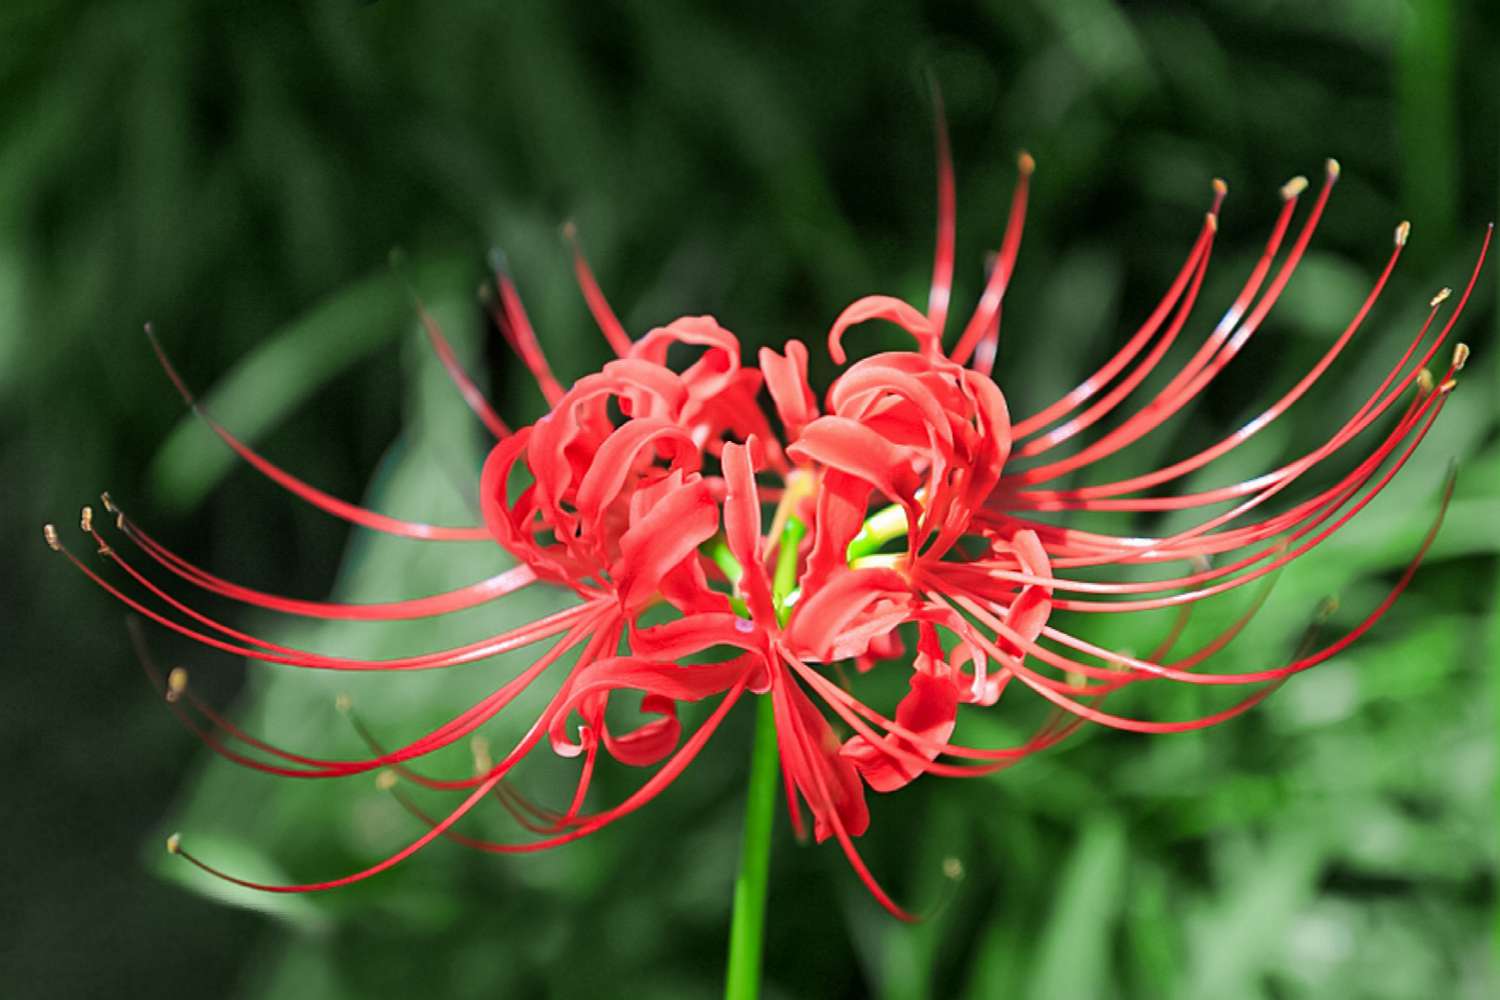 Spinnenlilienstängel mit leuchtend roten spinnenbeinartigen Blütenblättern und langen Staubgefäßen in Nahaufnahme